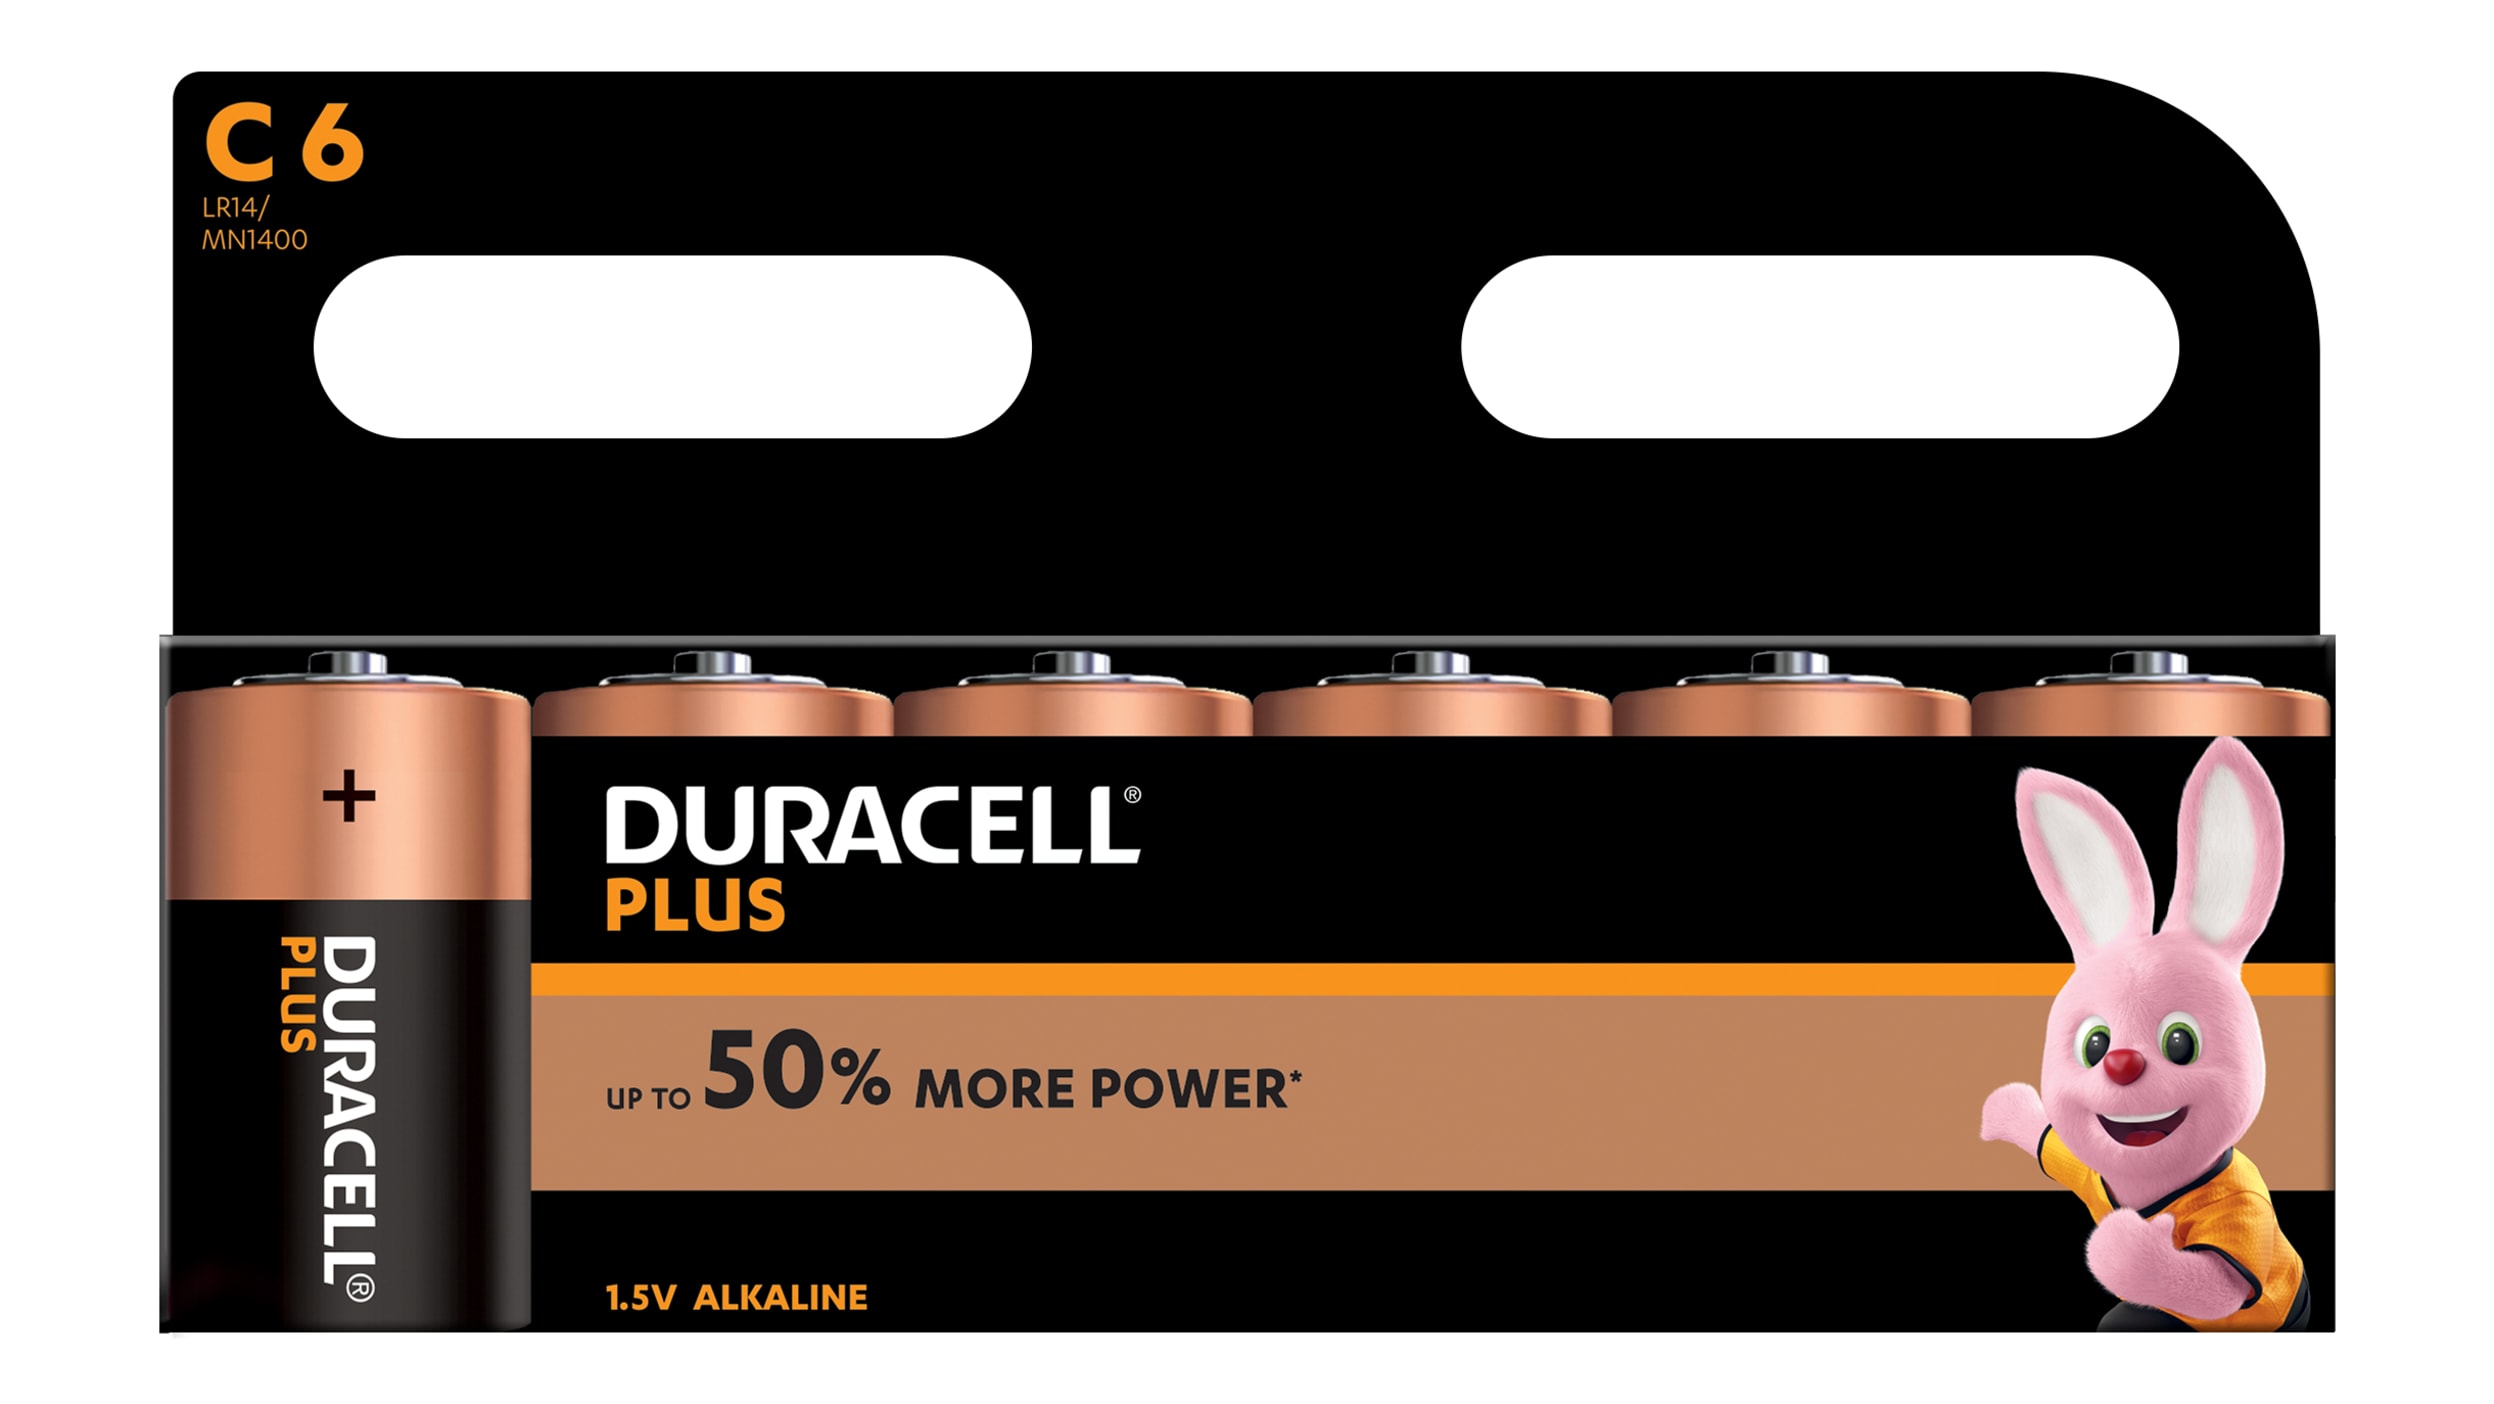 4 x Duracell C 1.5v Alkaline Batteries C2 LR14 / MN1400 Long Lasting Power